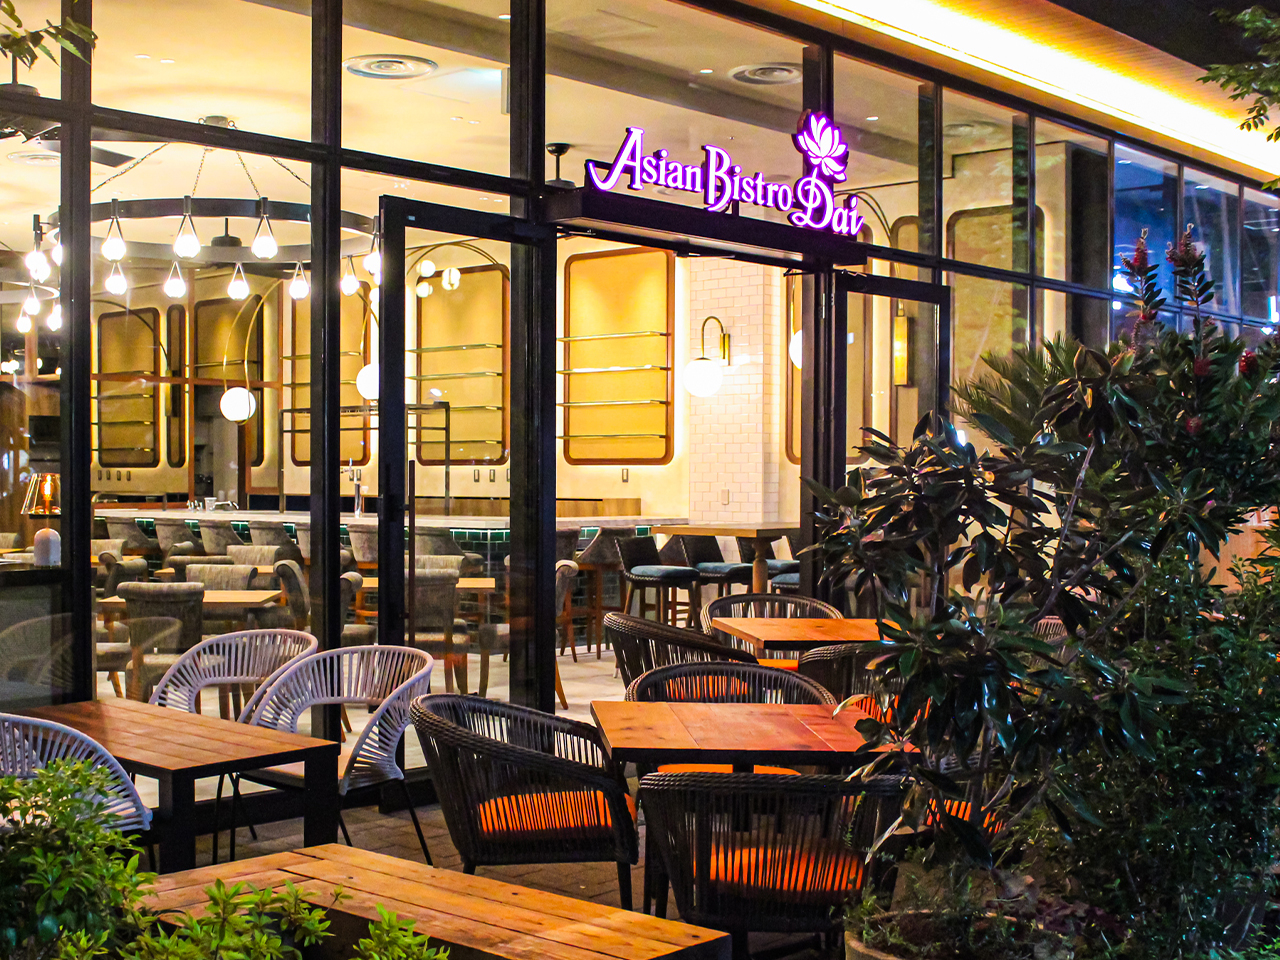 当社はエスニック・イタリアン・フレンチ・中華など幅広いジャンルで複数のレストランを運営しています。